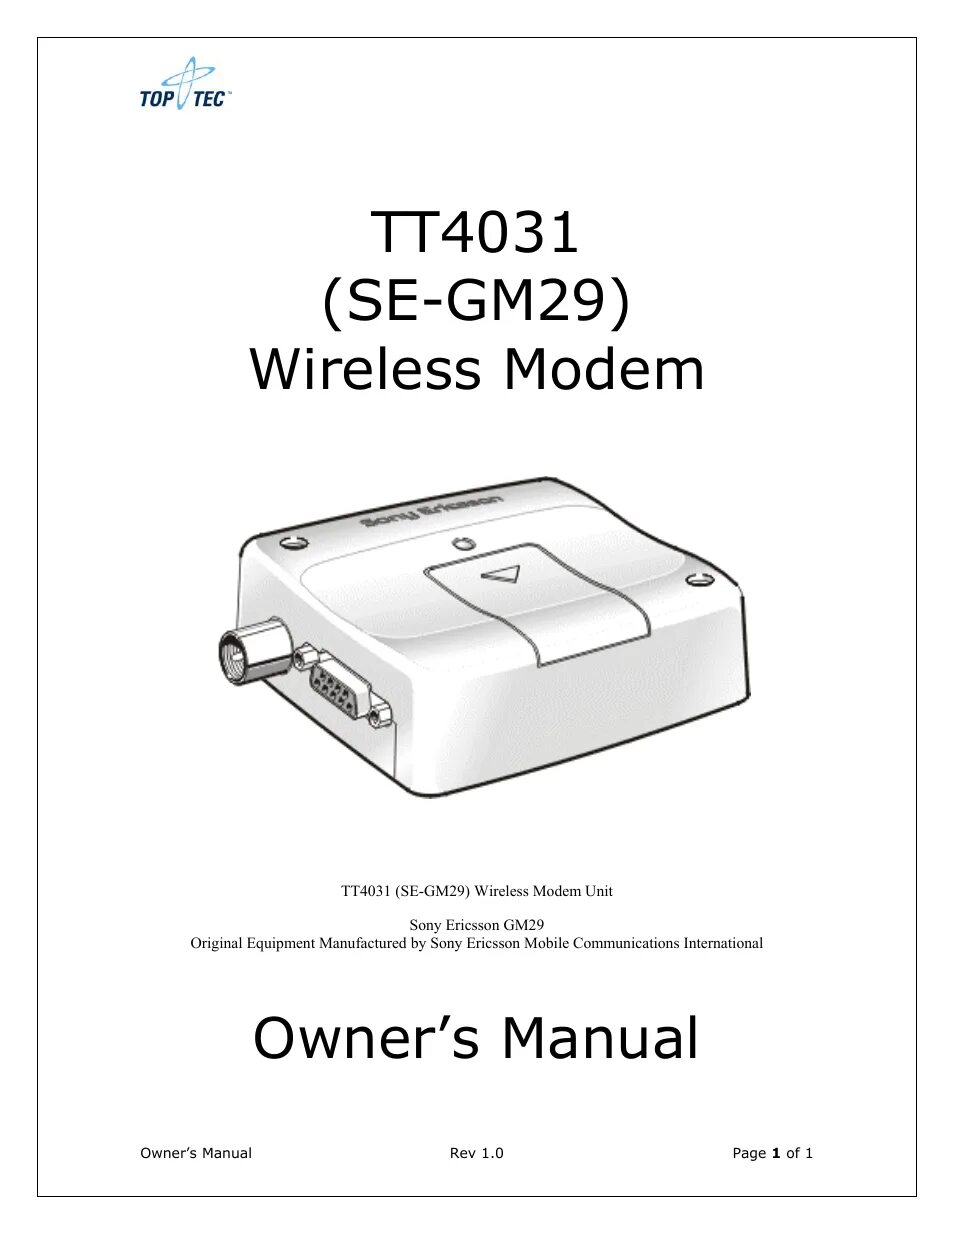 Справочник 29. Sony Ericsson user manual. Модем Sony Ericsson gm29 Terminal. Модем инструкция по эксплуатации. Sony Ericsson gm29 инструкция.